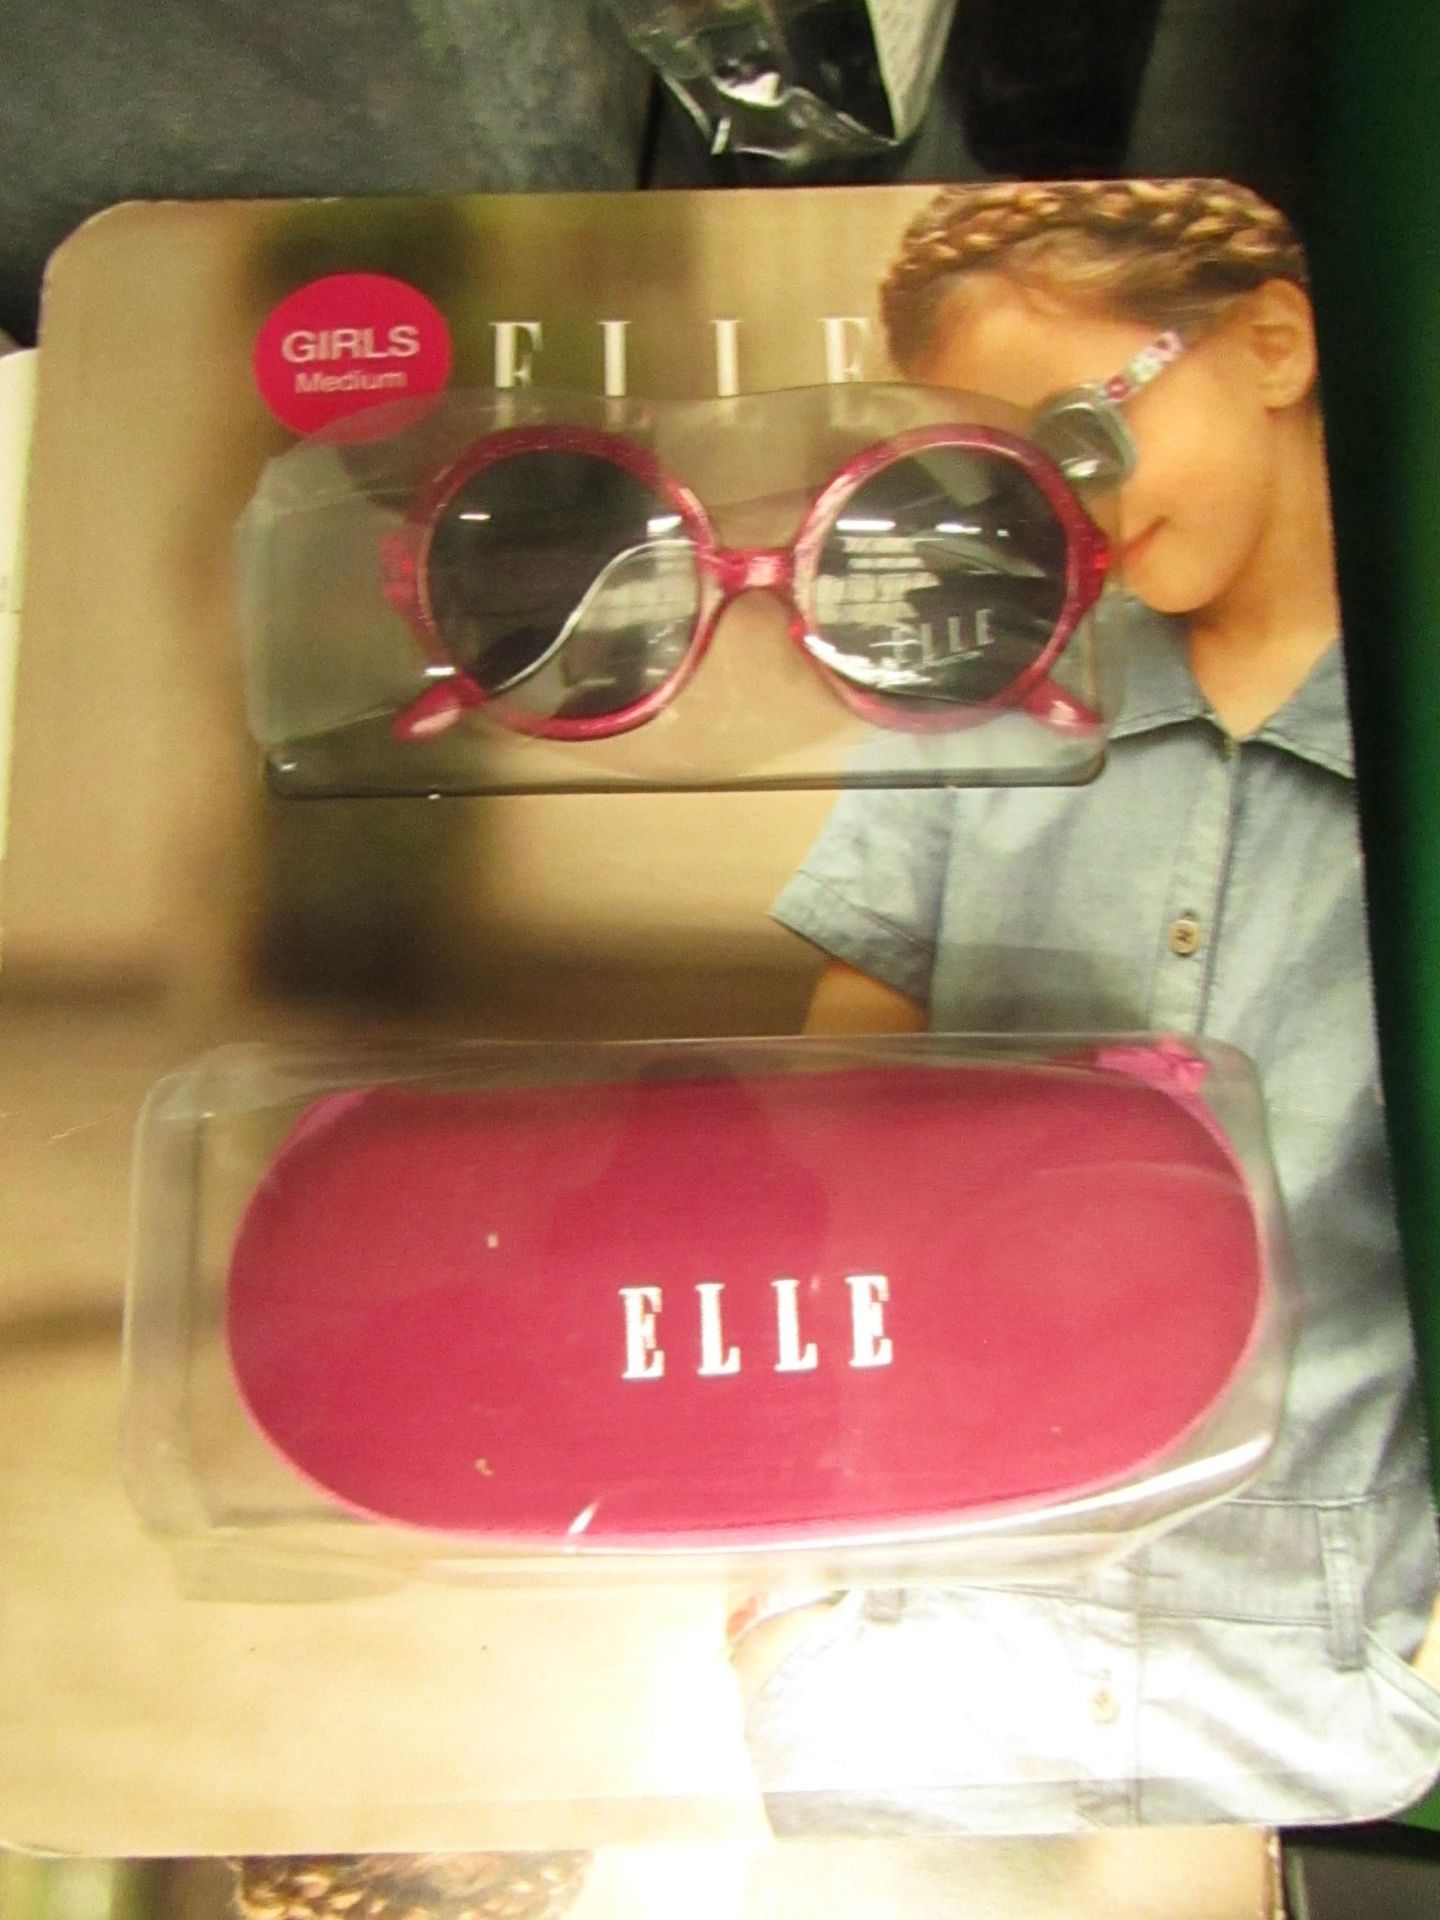 Elle - Sunglasses (Girls) Pink - Size Medium - Unused & Packaged.